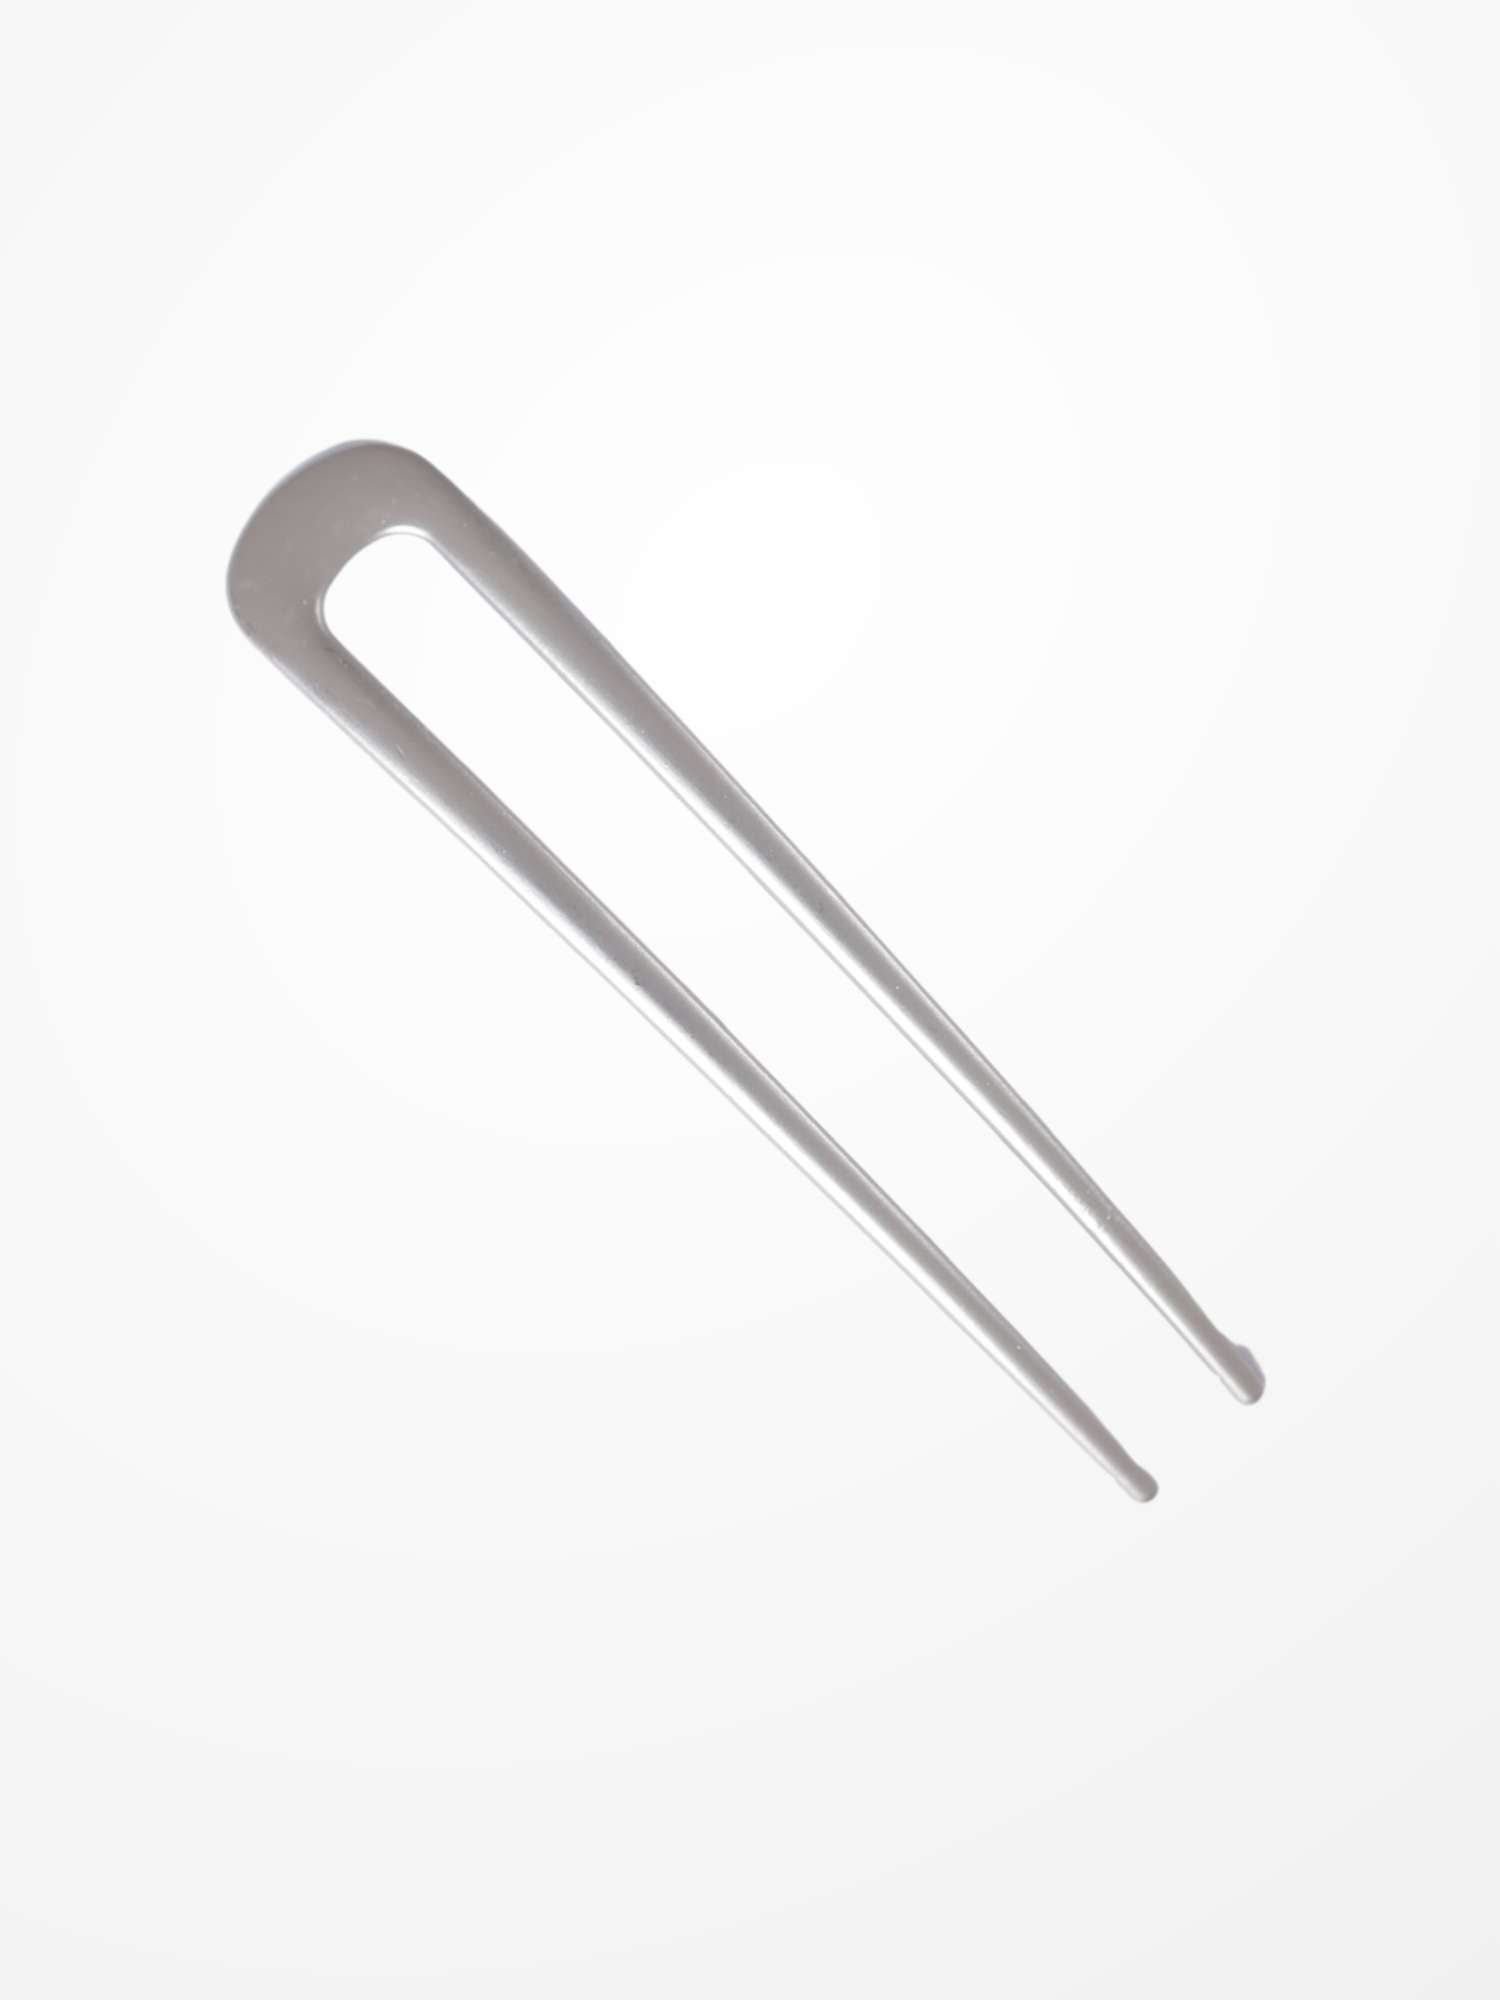 Metal U shape Hairpins for Hair buns